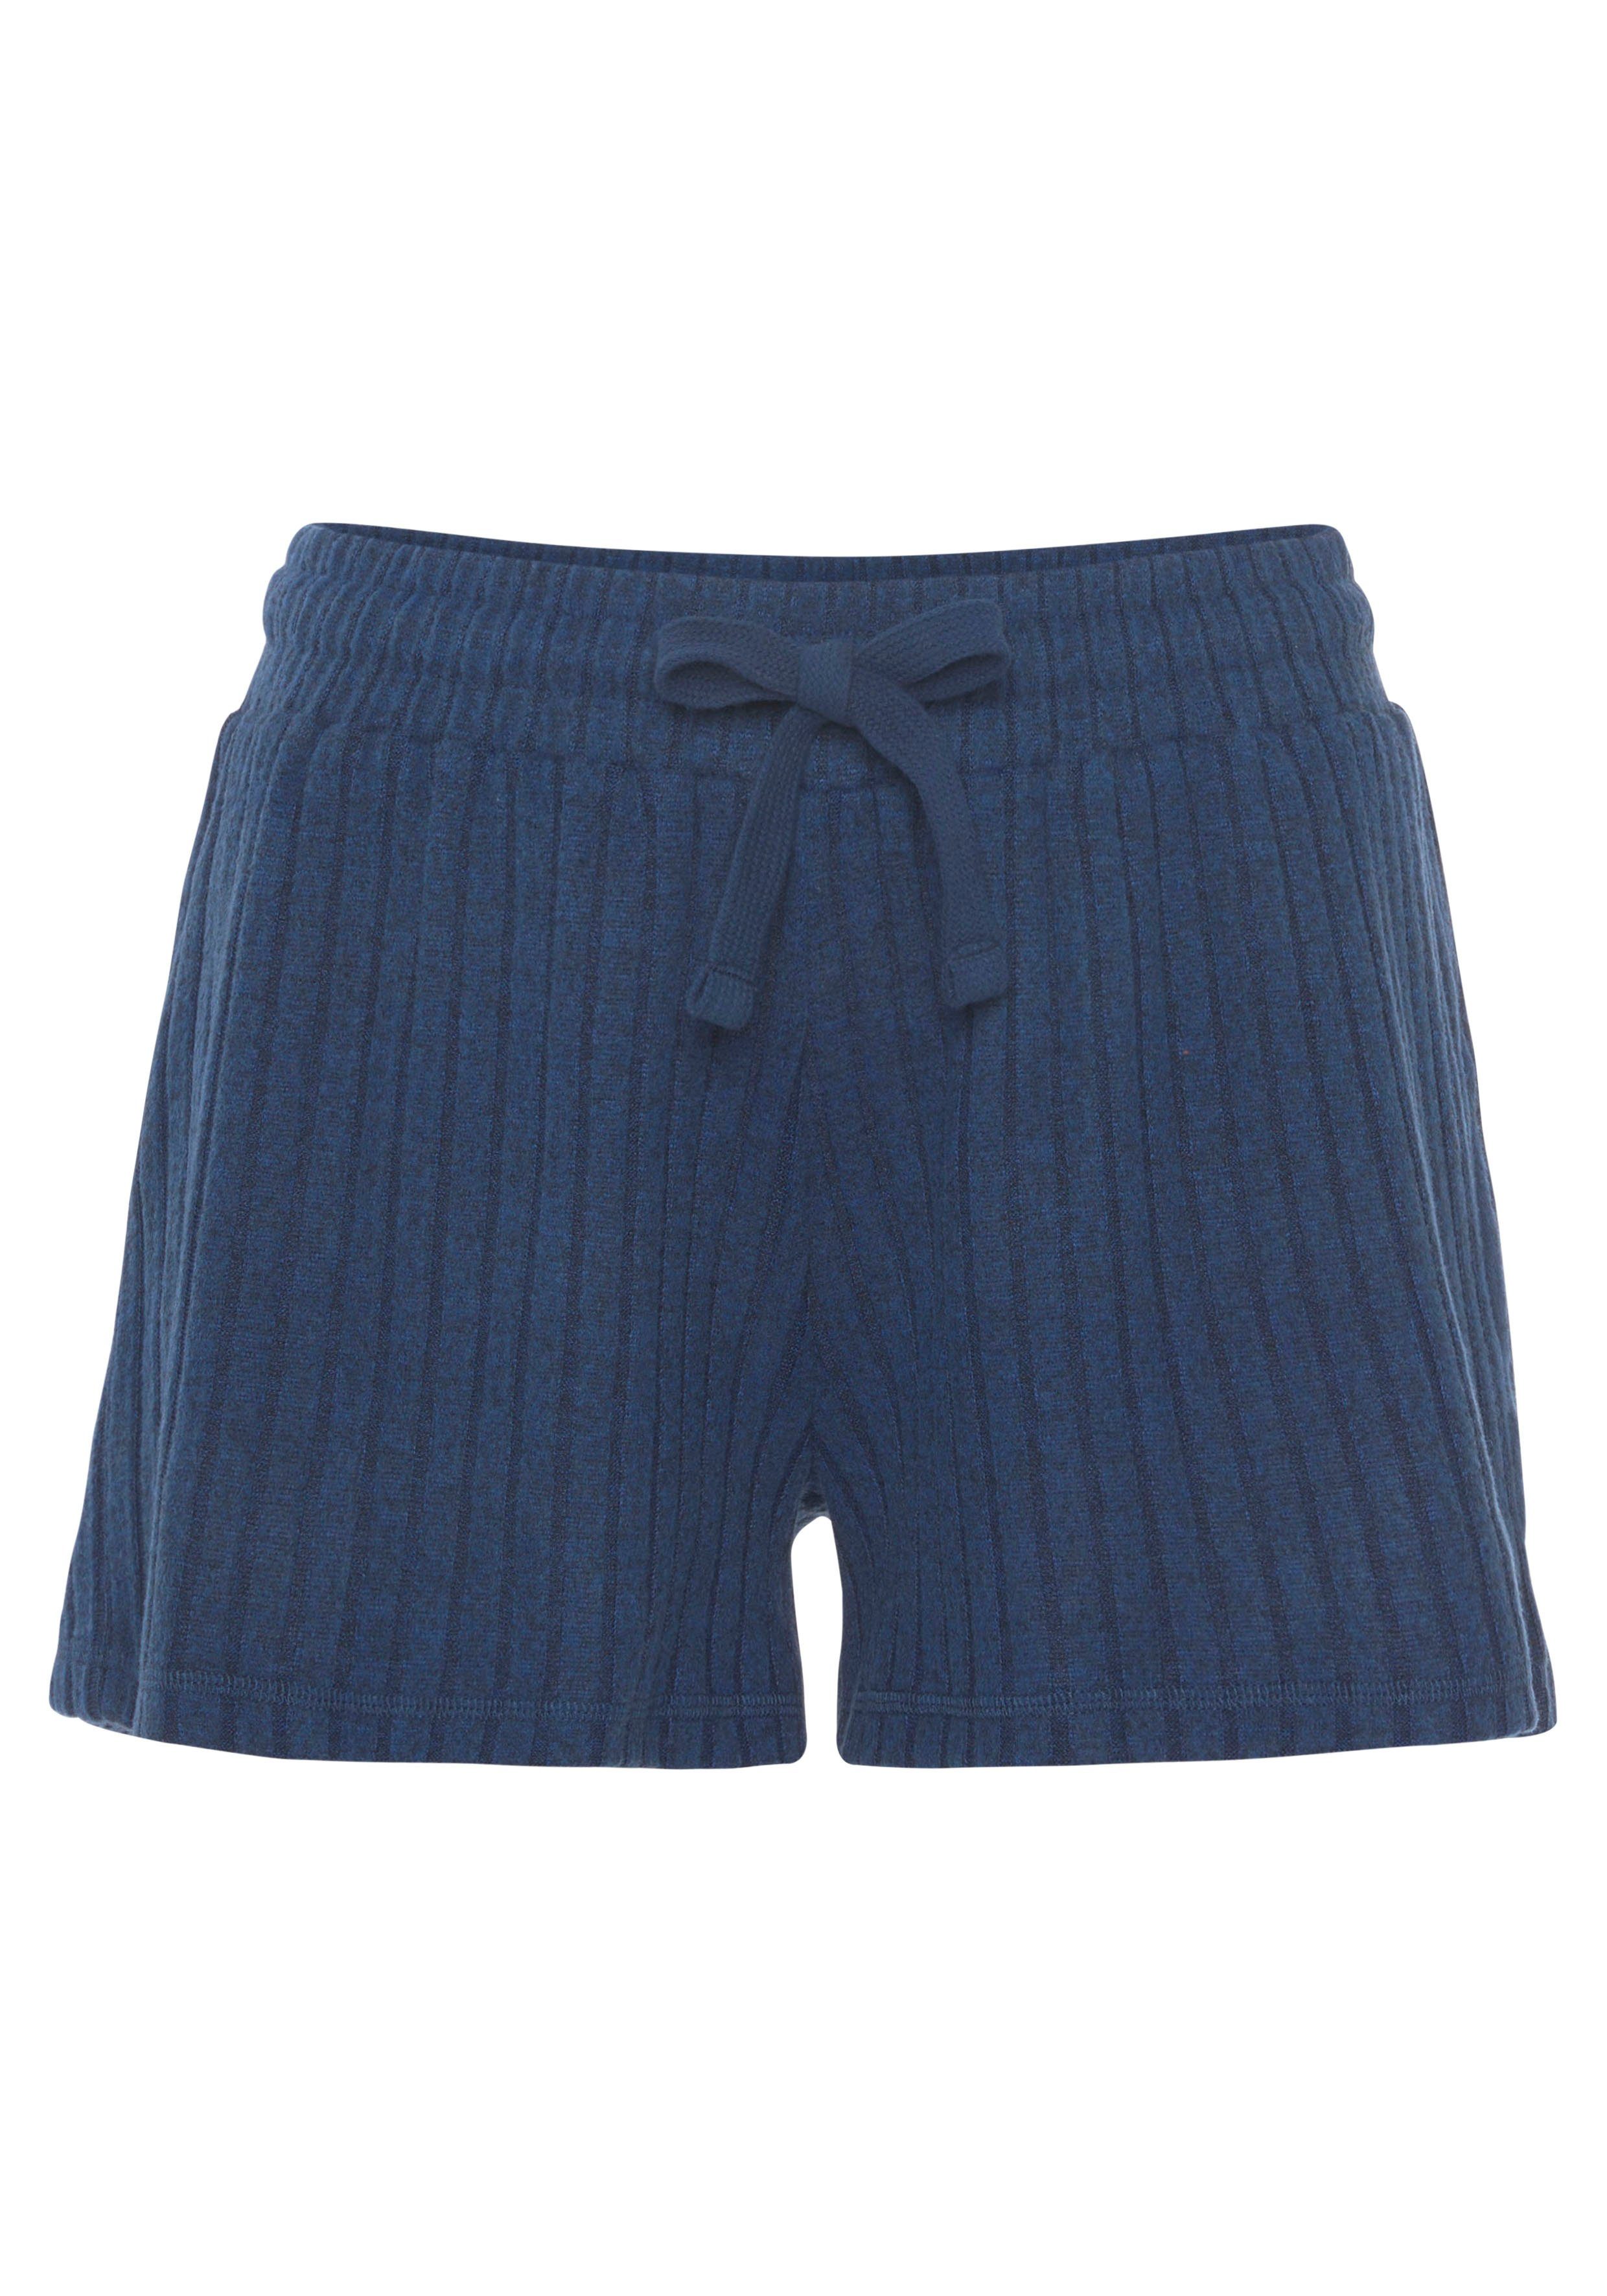 mit weicher blau-meliert -Loungeshorts Ripp-Qualität LASCANA Shorts meliert Bindeband in